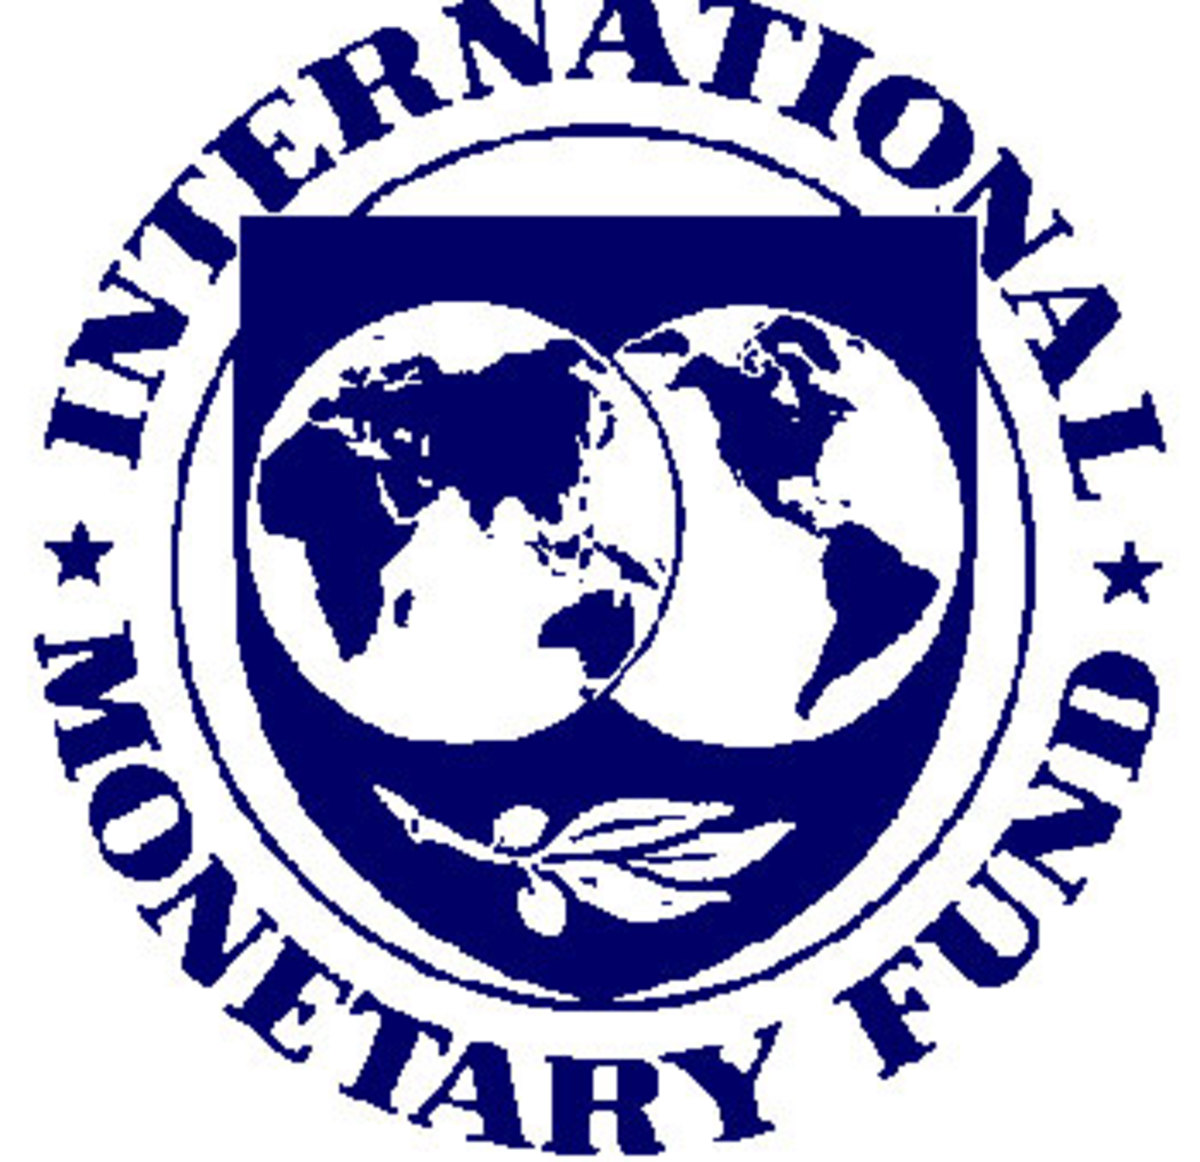 Σήμερα η έκθεση του ΔΝΤ μια μέρα μετά τον ανασχηματισμό